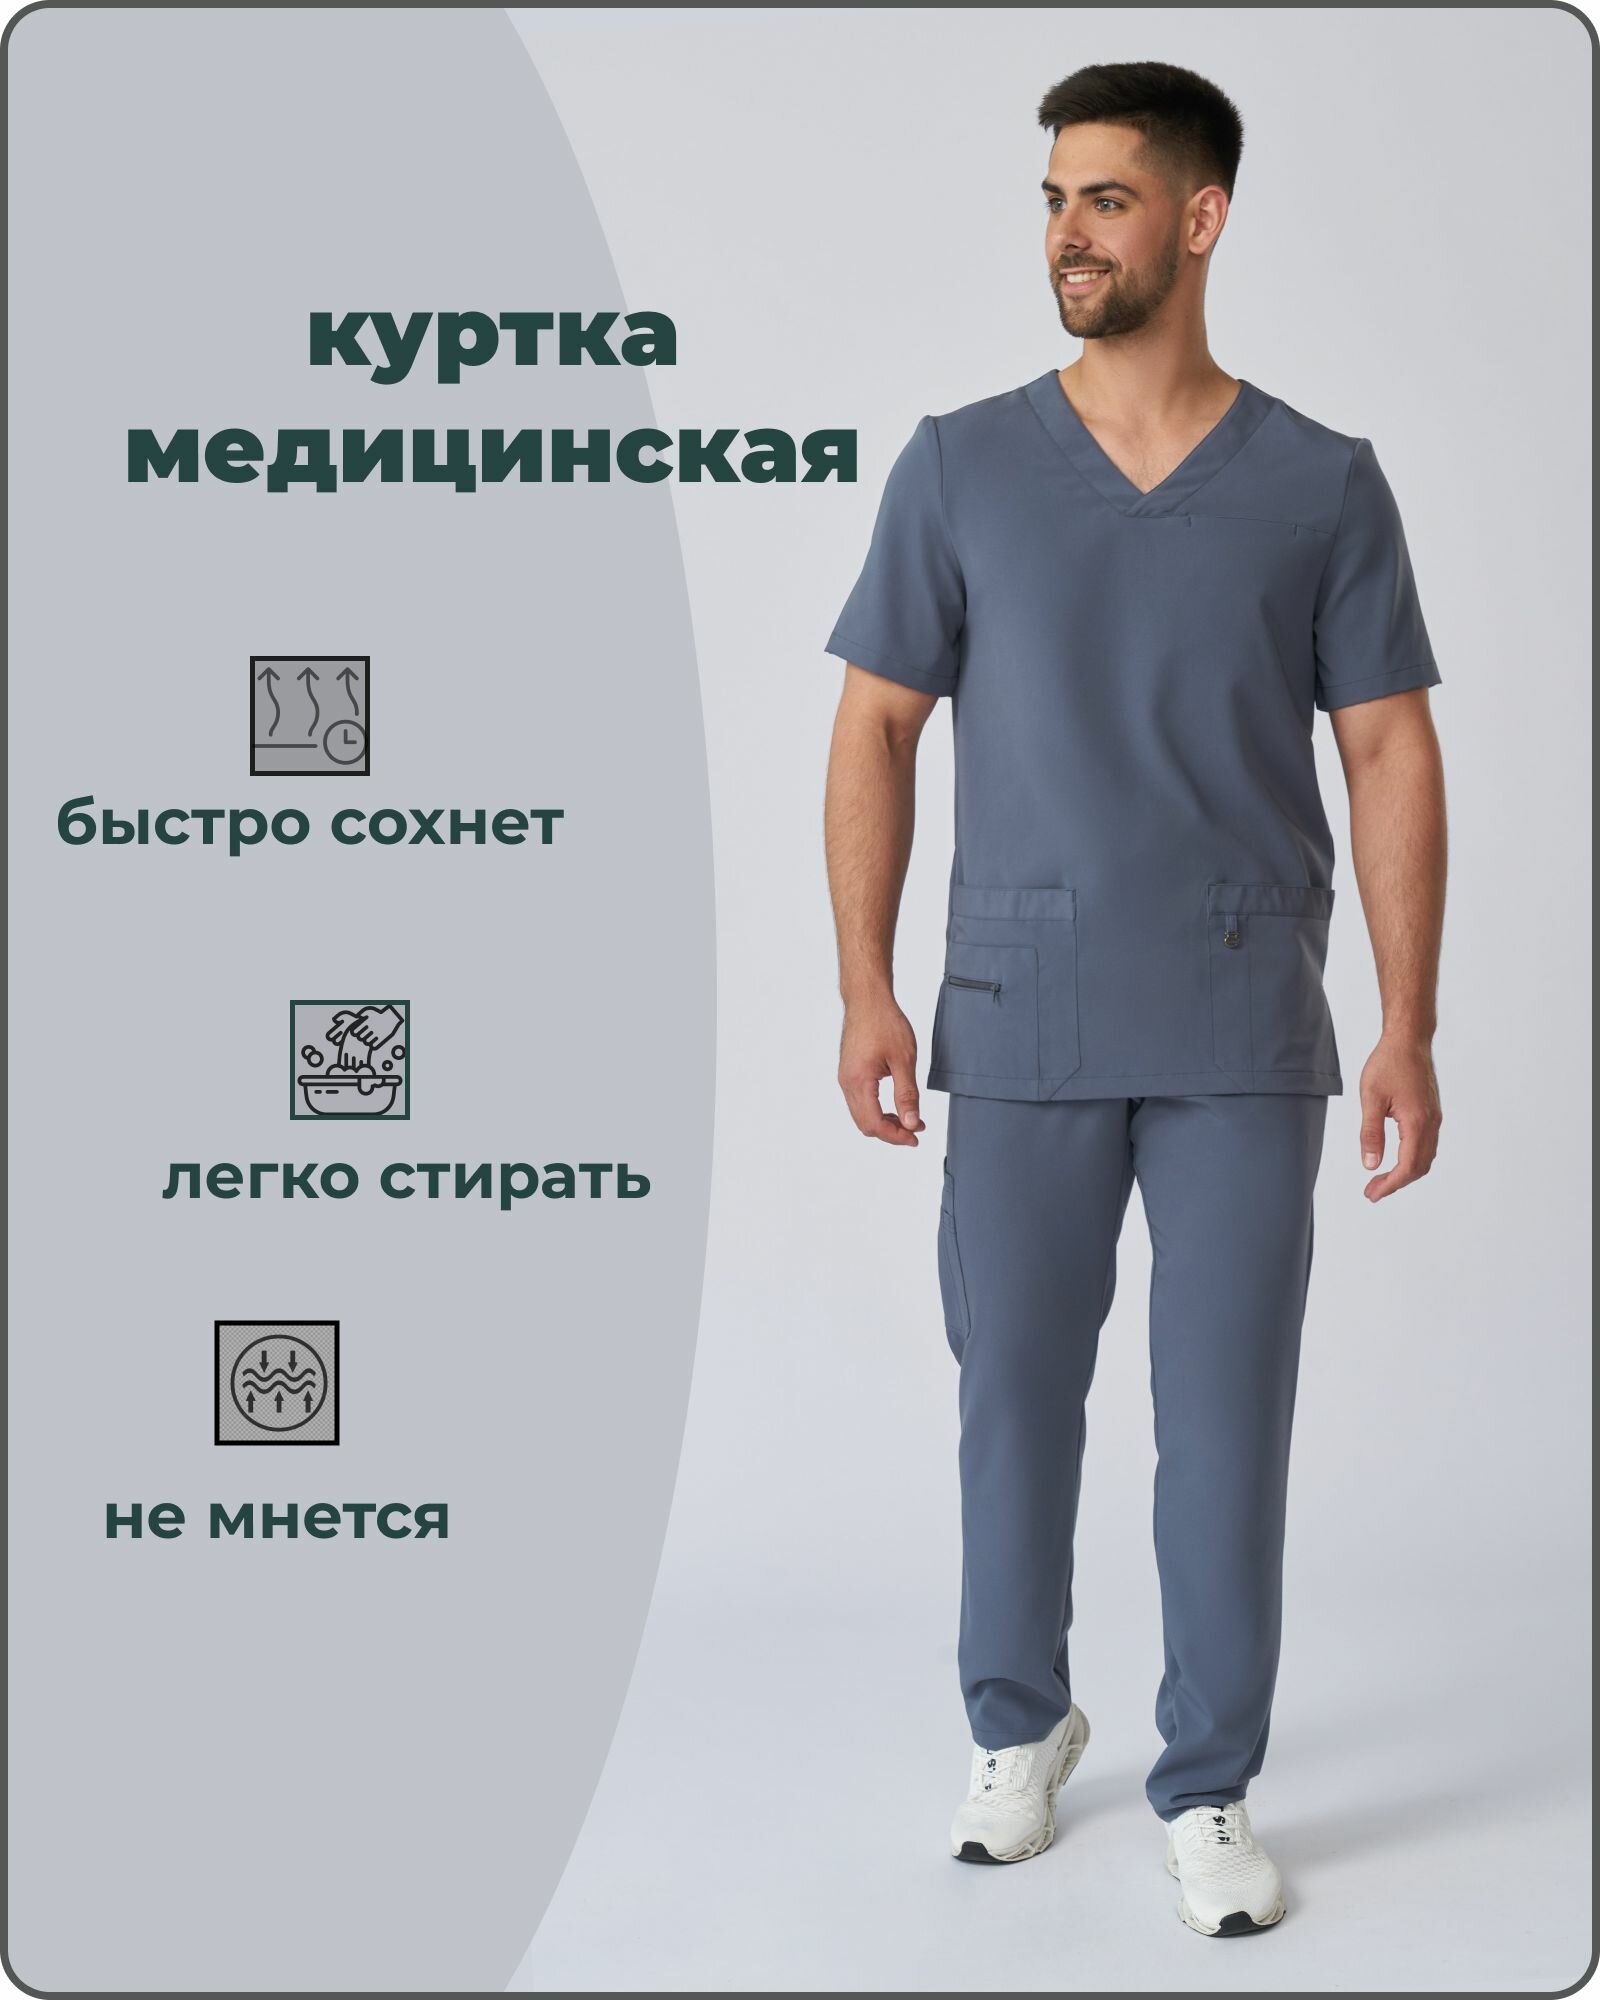 Куртка медицинская хирургическая мужская серая размер 48 спецодежда